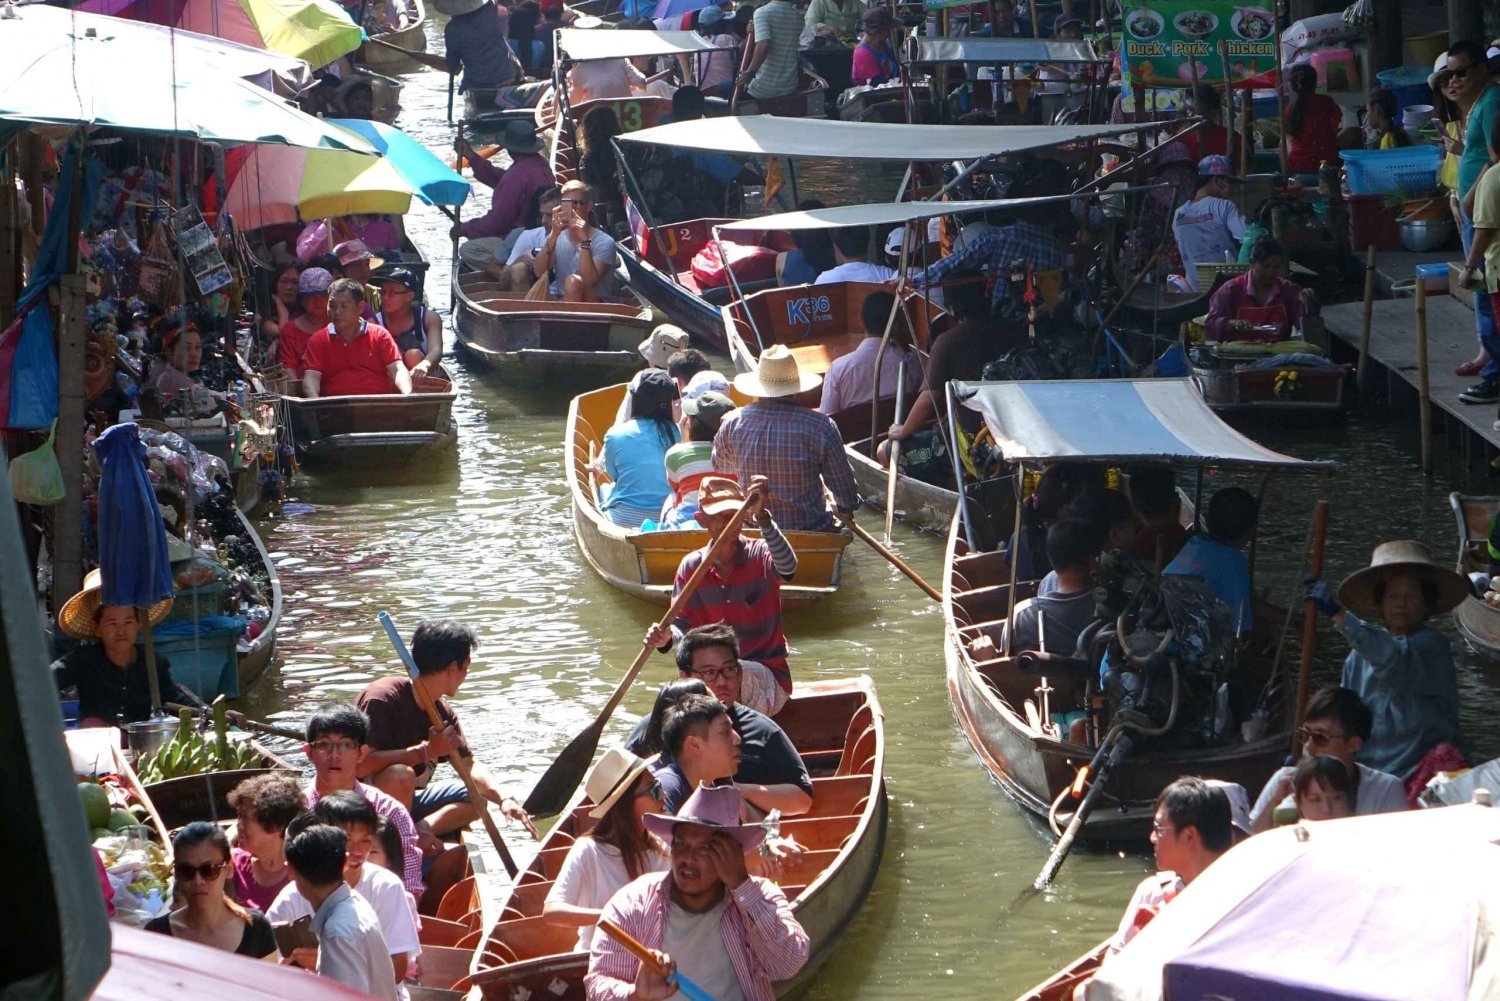 Mercato galleggiante di Damnoen Saduak e tour combinato di Ayutthaya